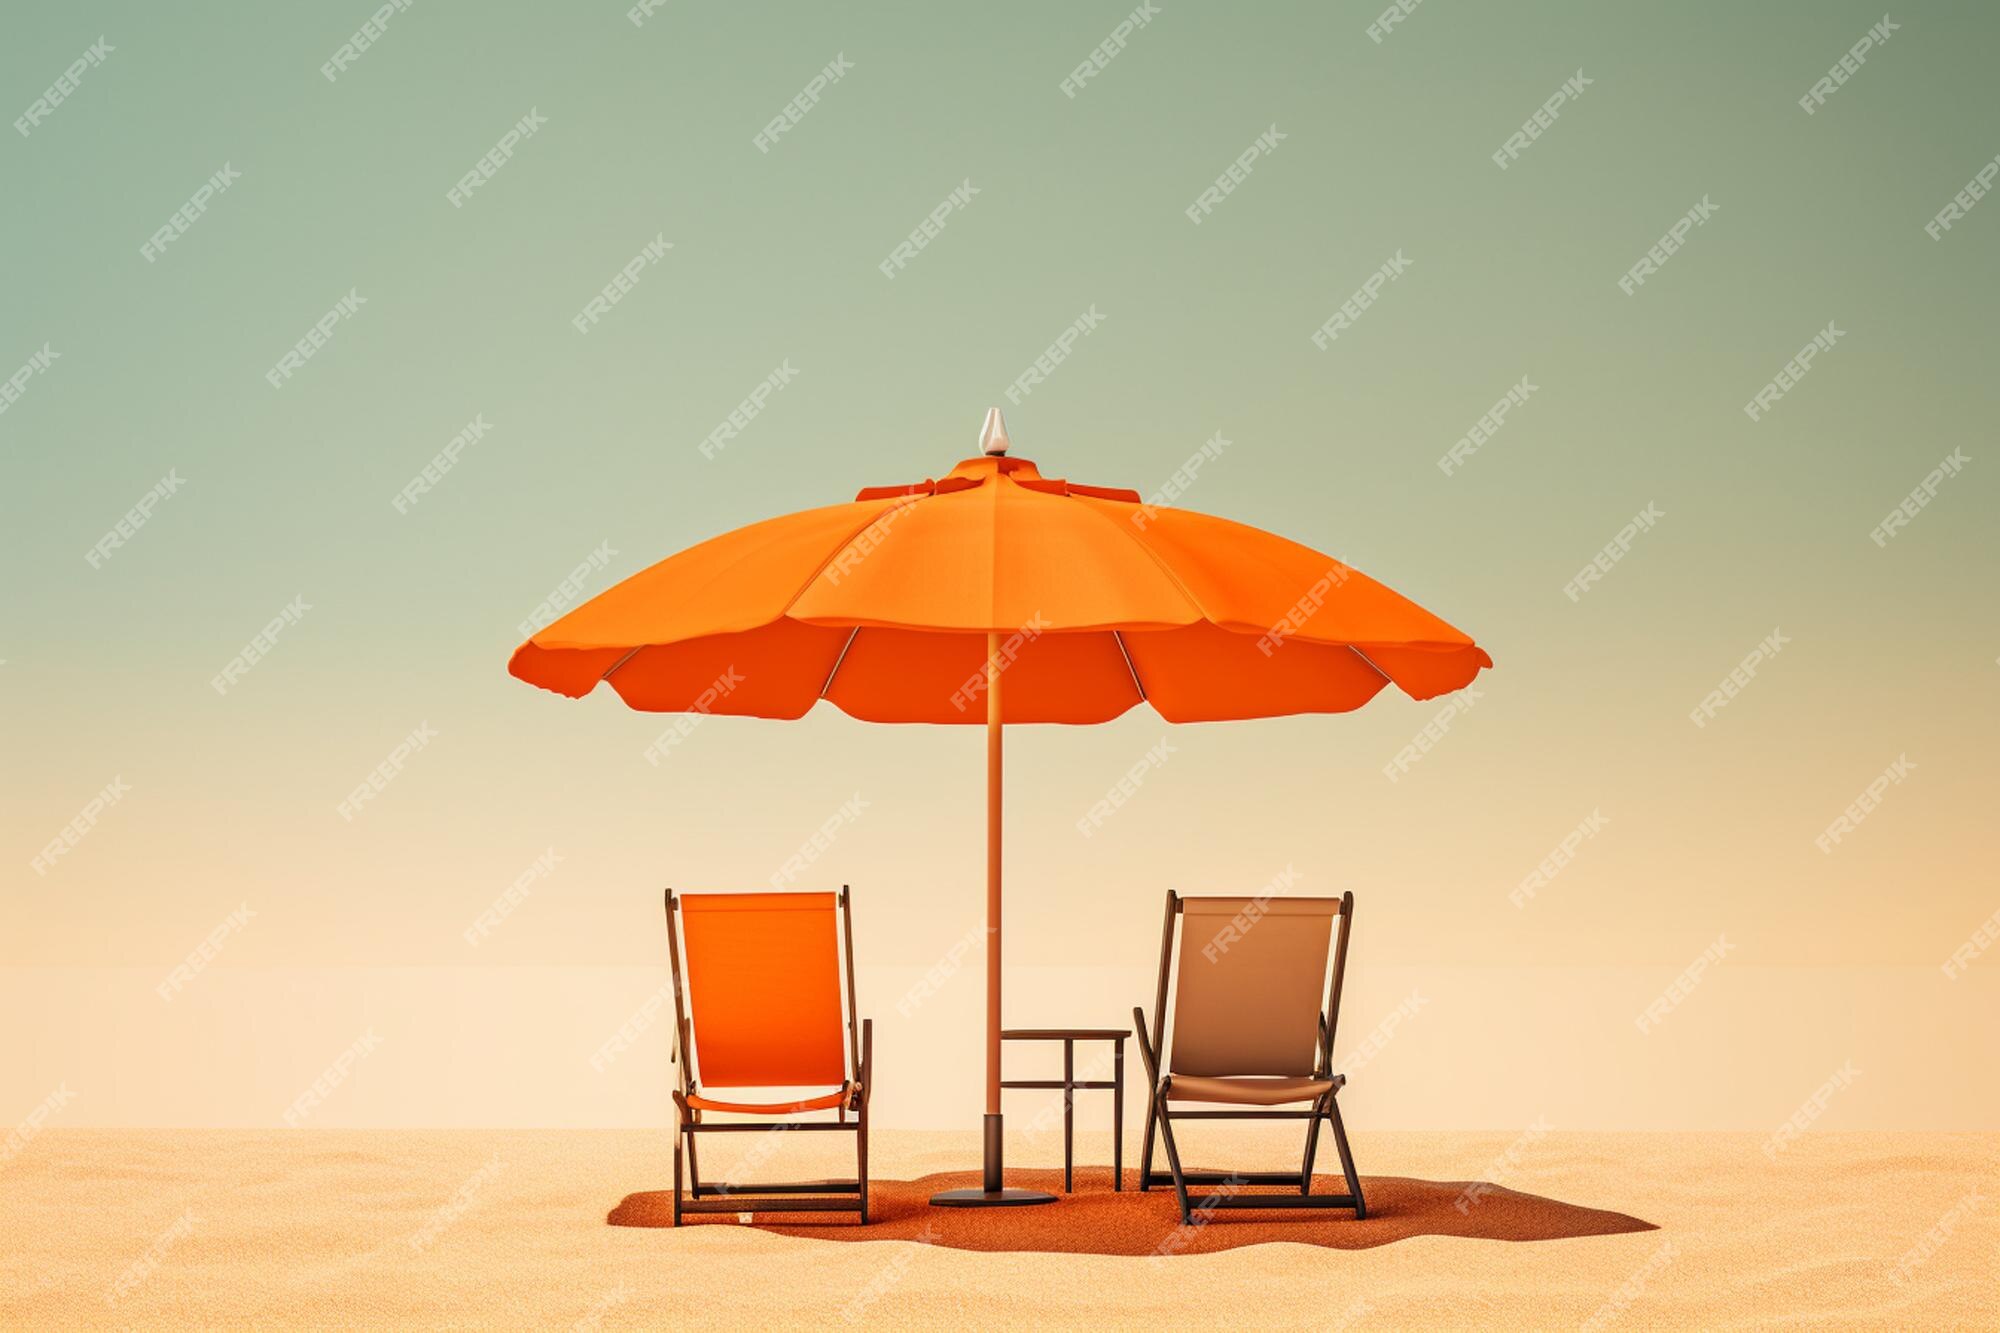 Sonnenschirm Am Strand Bilder - Kostenloser Download auf Freepik